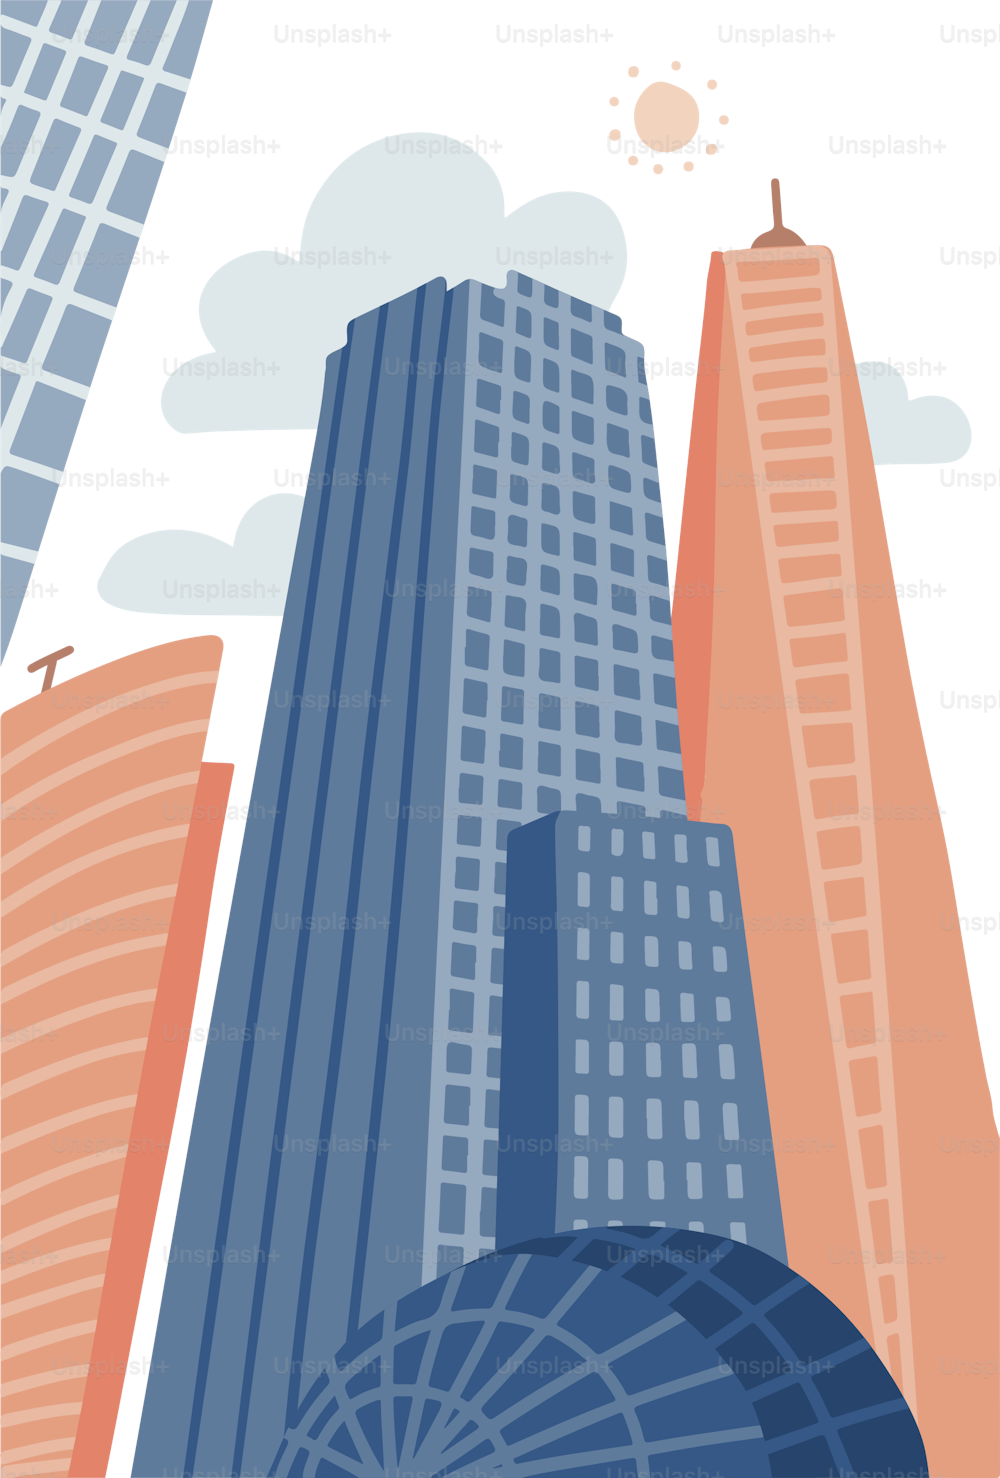 Città moderna dei cartoni animati in stile piatto disegnato a mano. Paesaggio urbano con grattacieli, proprietà urbana. Panorama verticale dell'illustrazione vettoriale, paesaggio urbano moderno